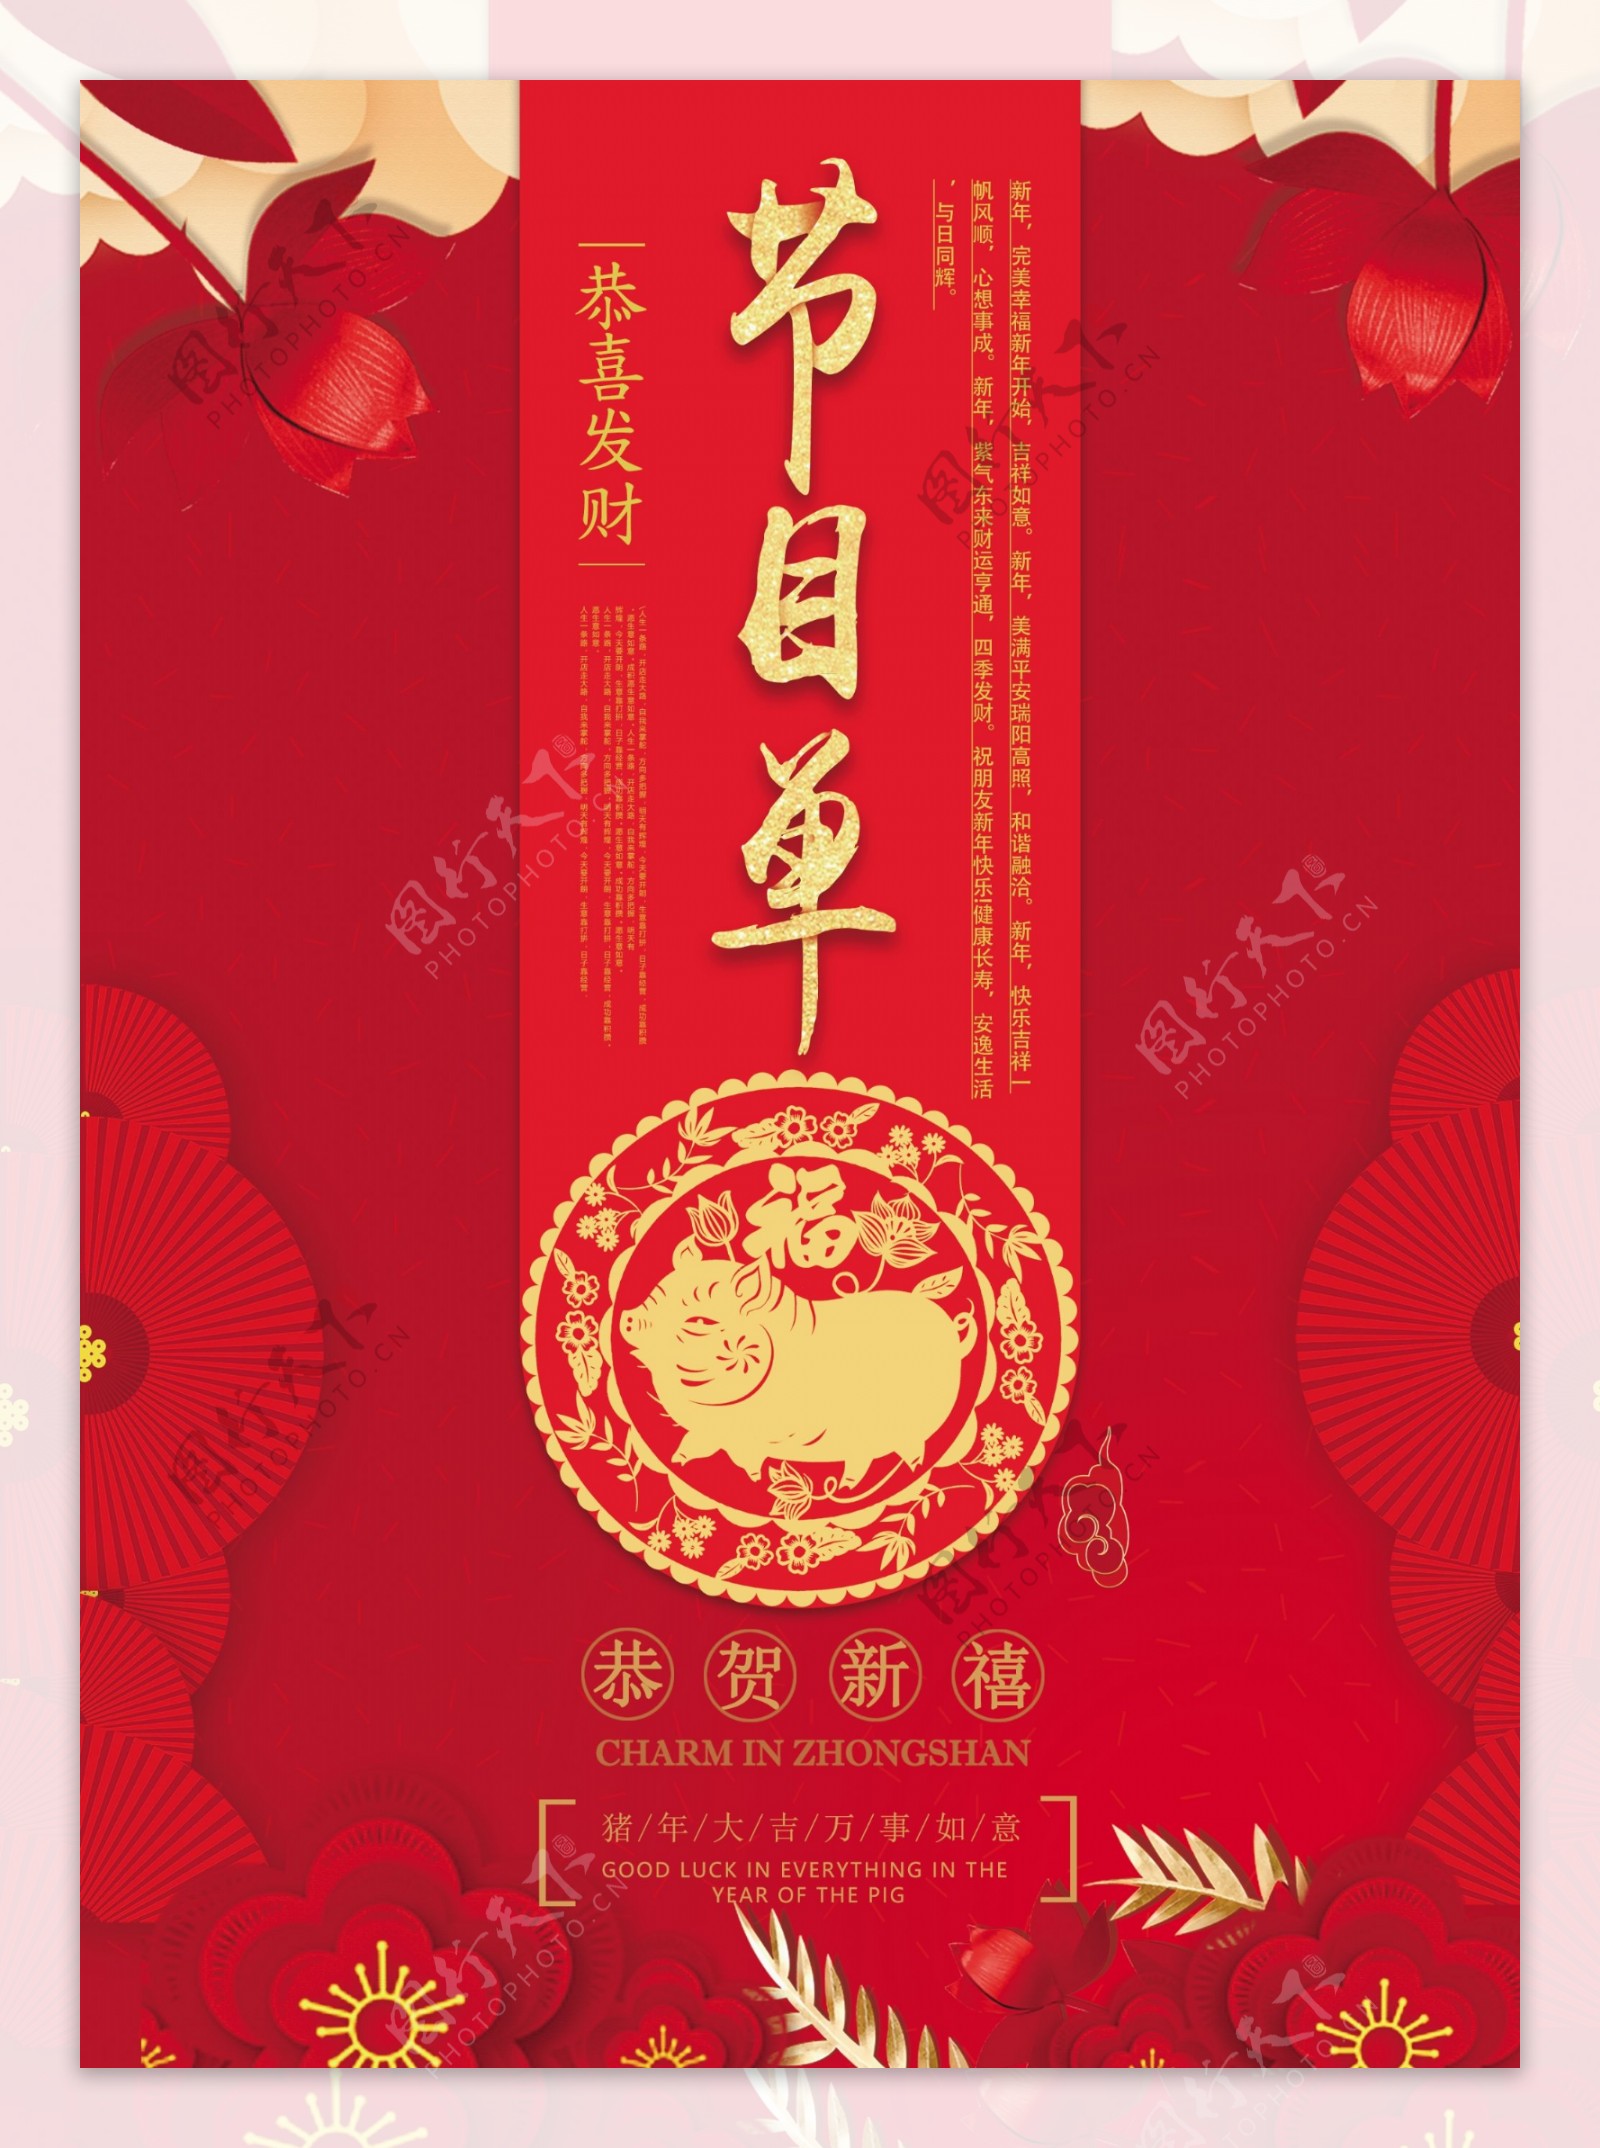 红色喜庆新春猪年晚会节目单宣传单